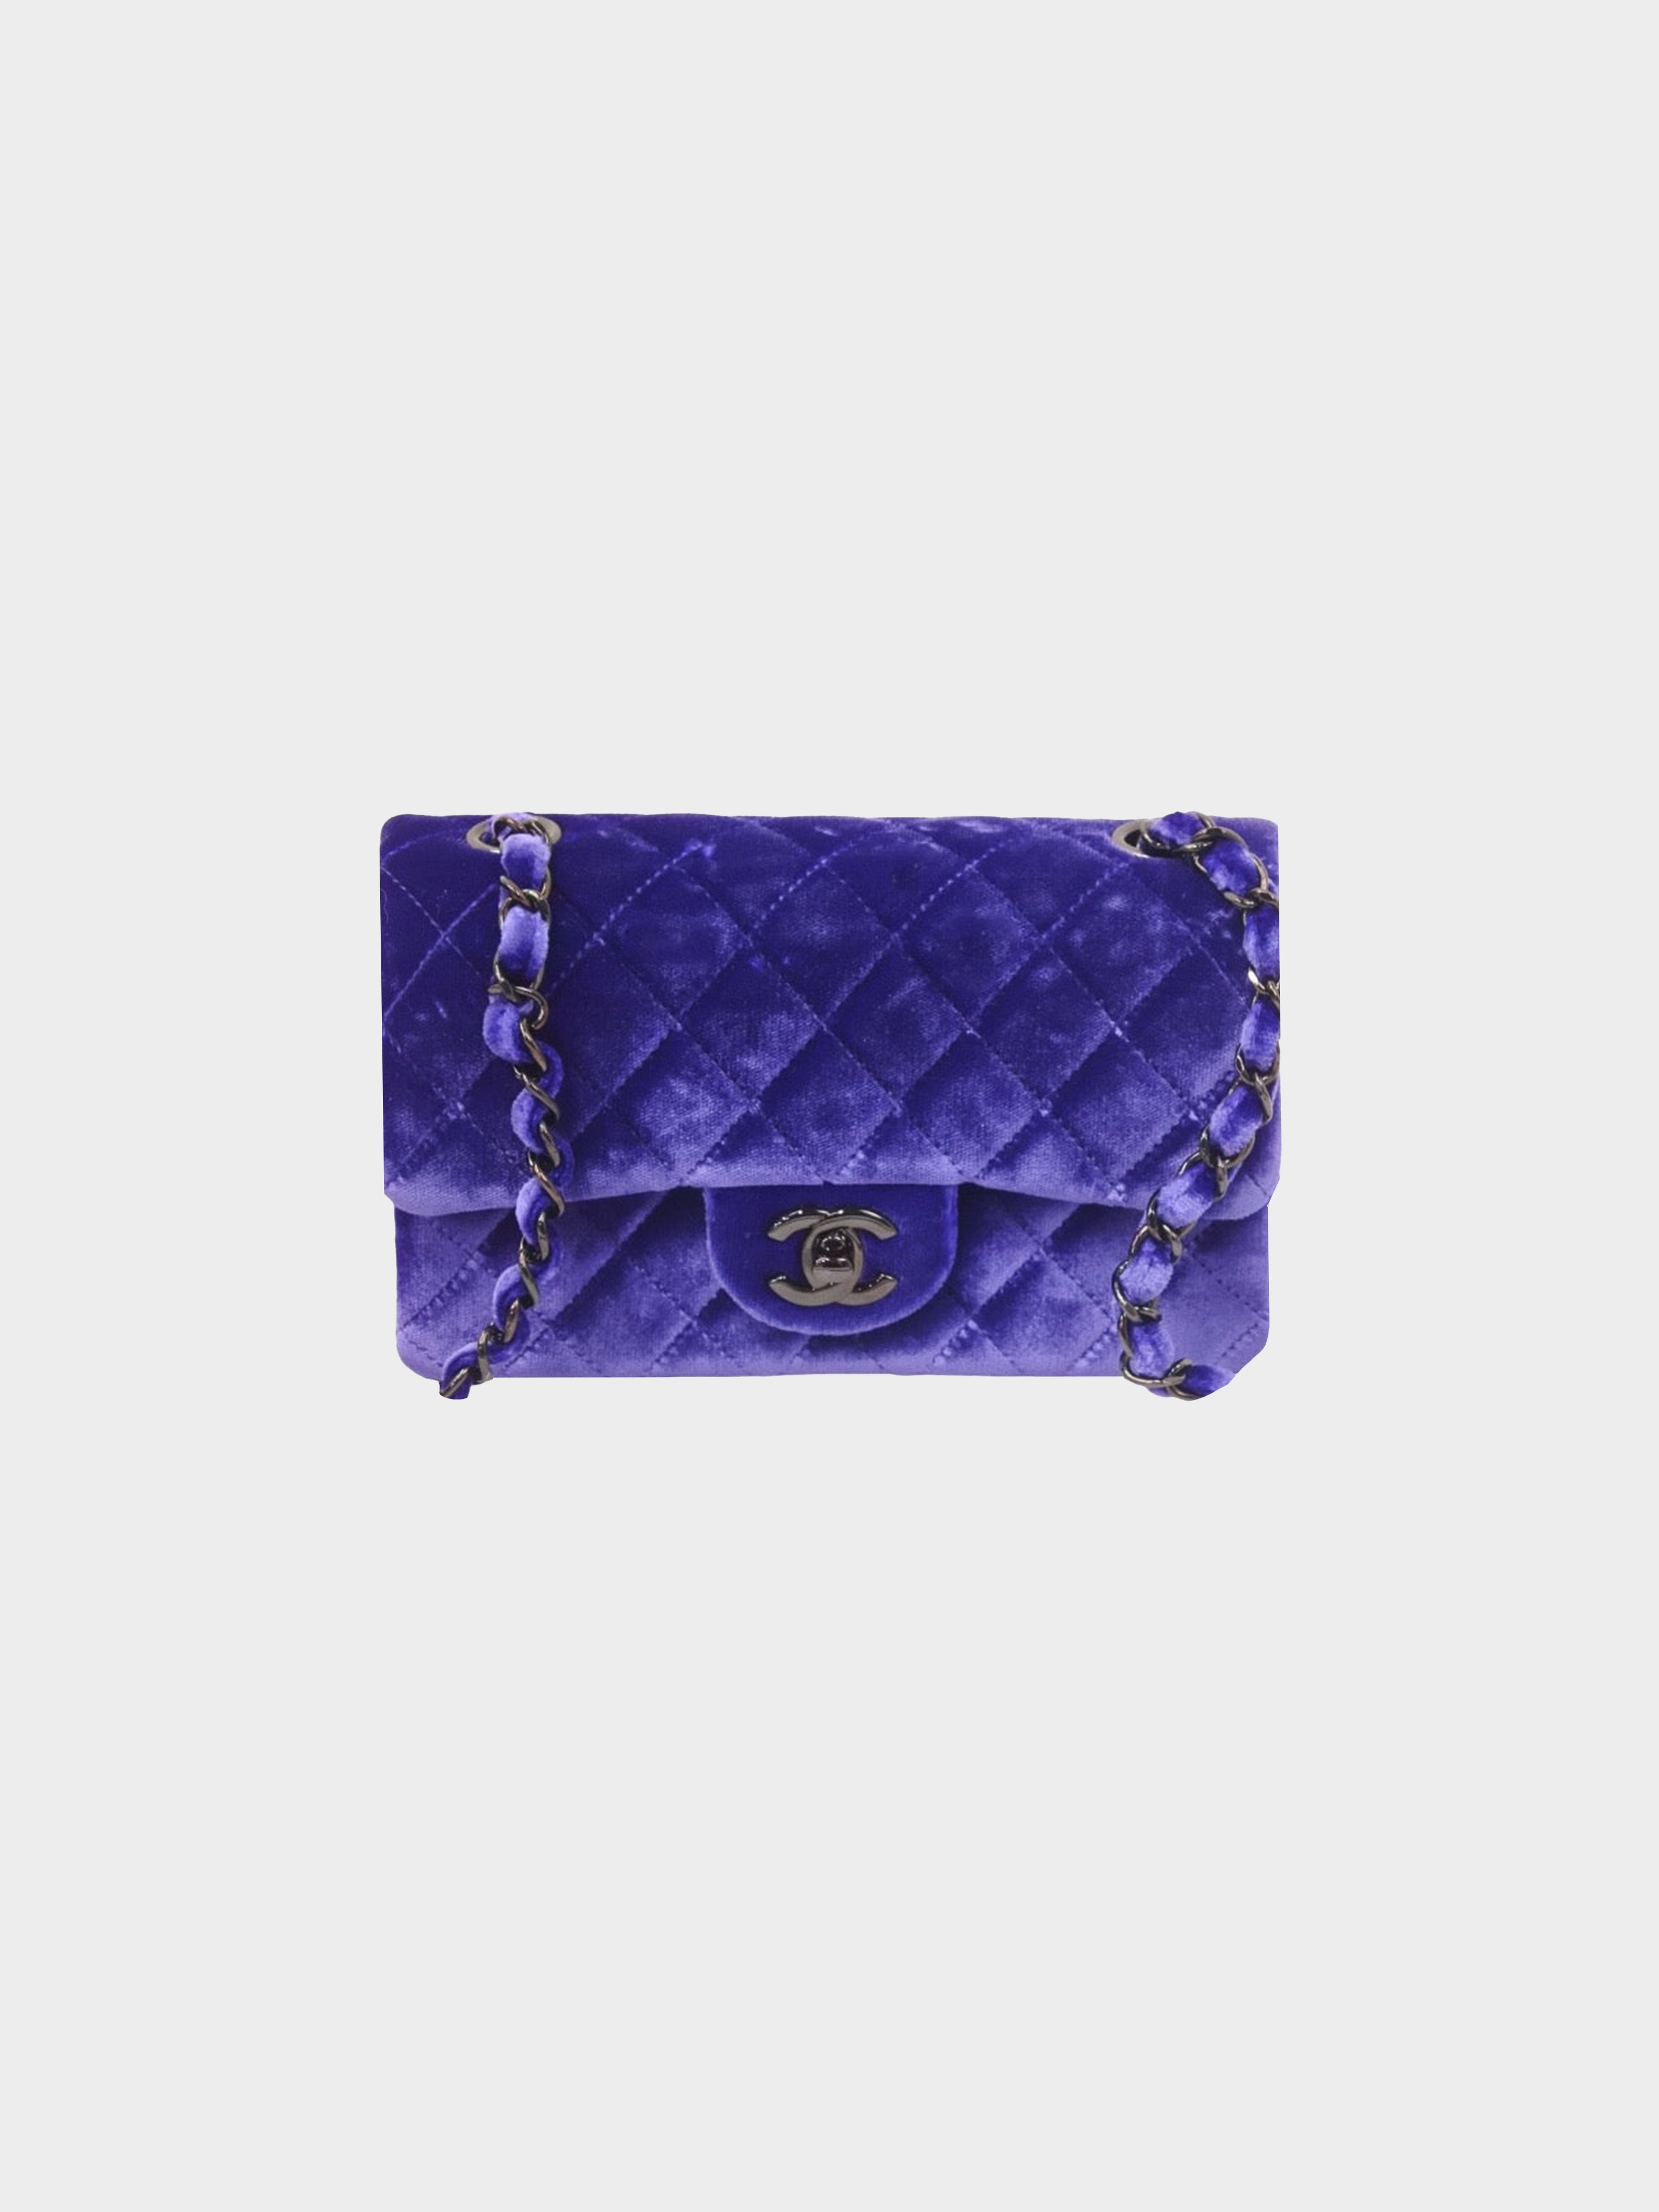 Chanel 2014 Purple Velvet Mini Flap Bag